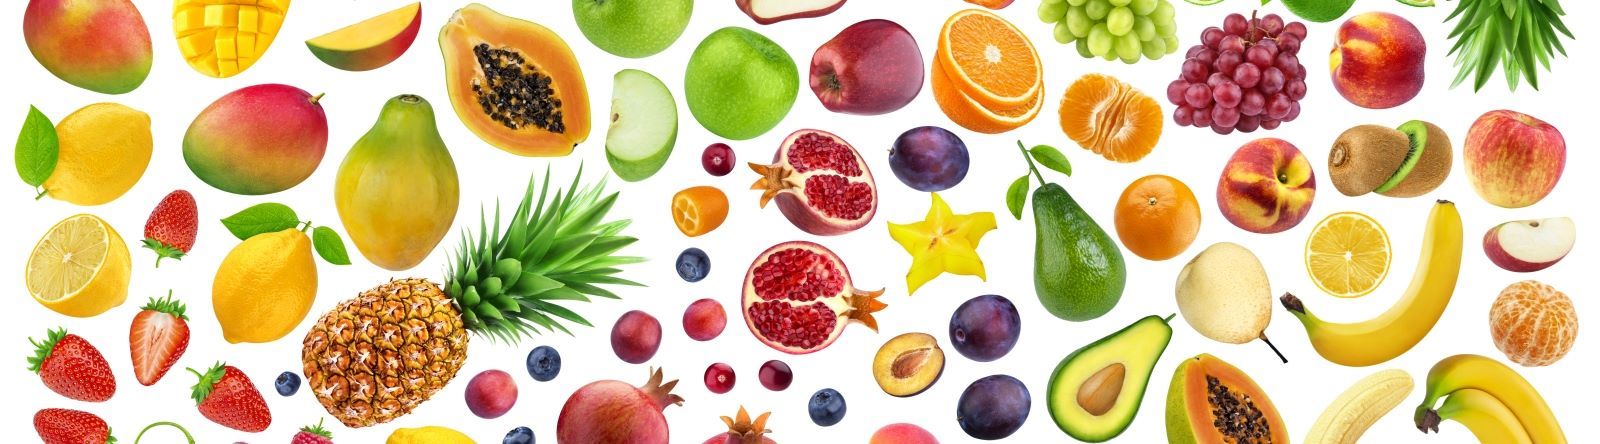 Fruta faz parte de uma alimentação saudável | Hospital da Luz